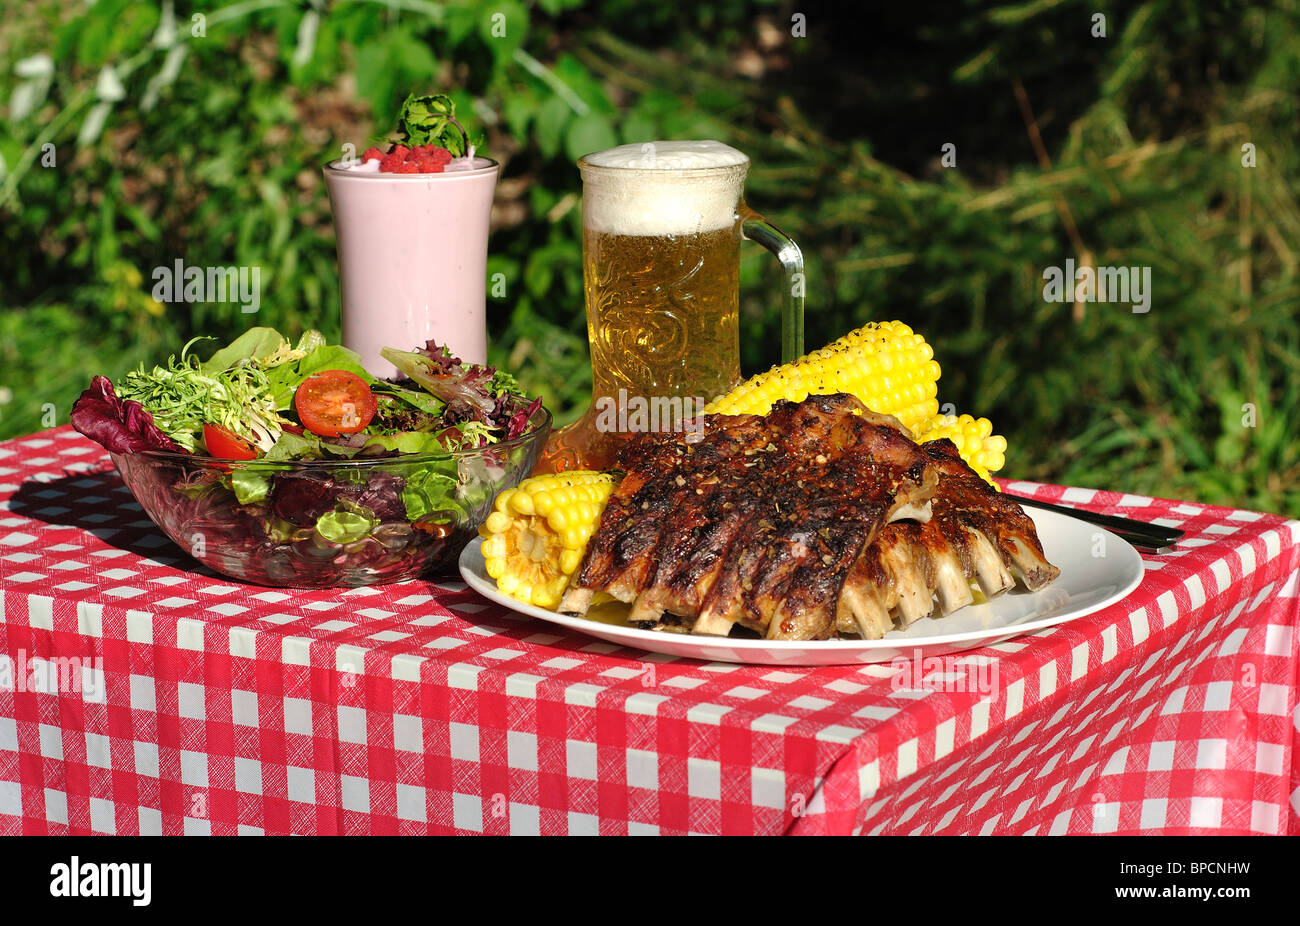 Rippen Feldsalat Bier Joghurt auf rote und weiße Tischdecke Stockfoto